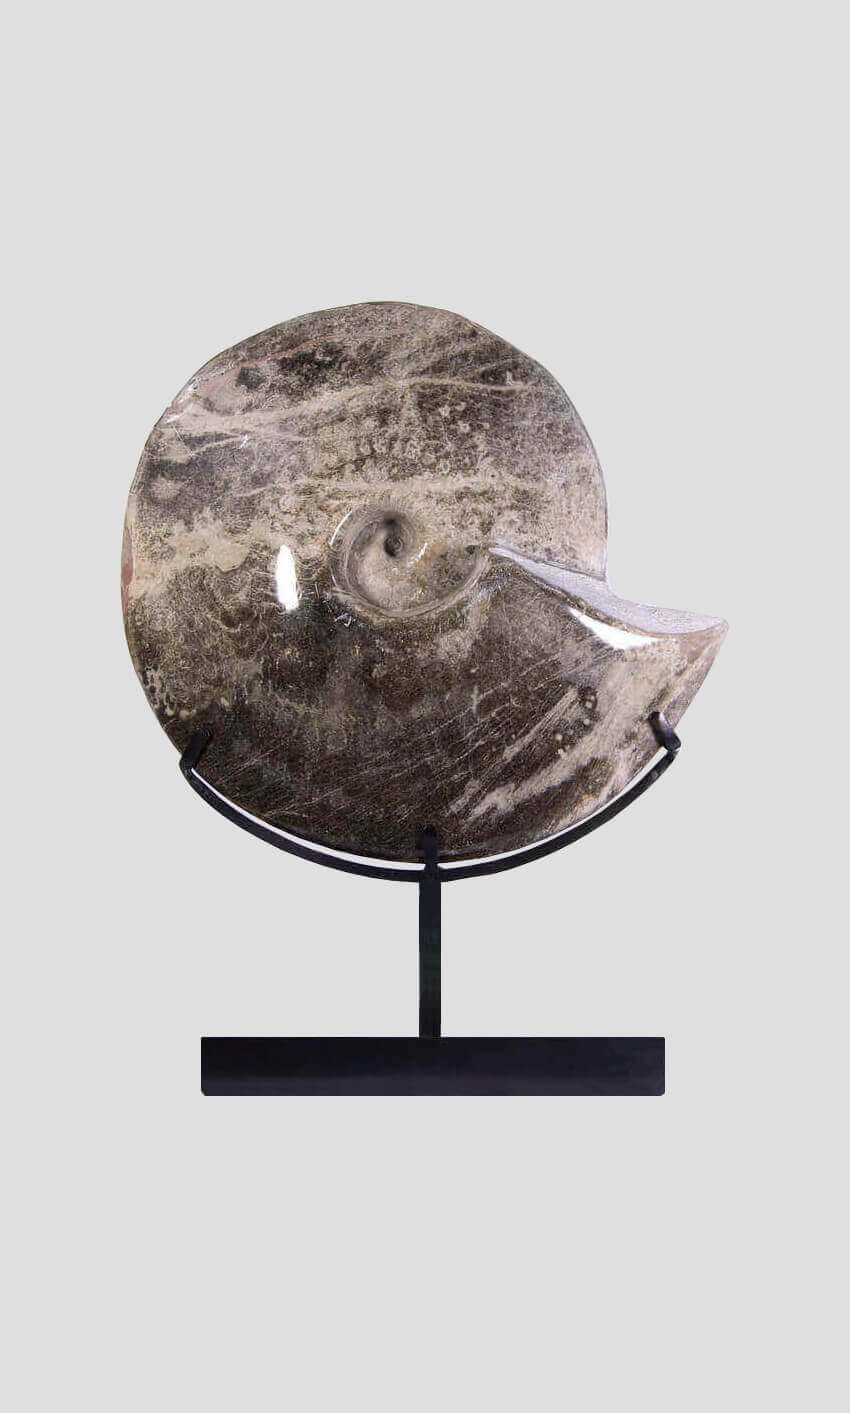 Hoplitoides Wohltmanni Ammonite 382mm on bronze stand